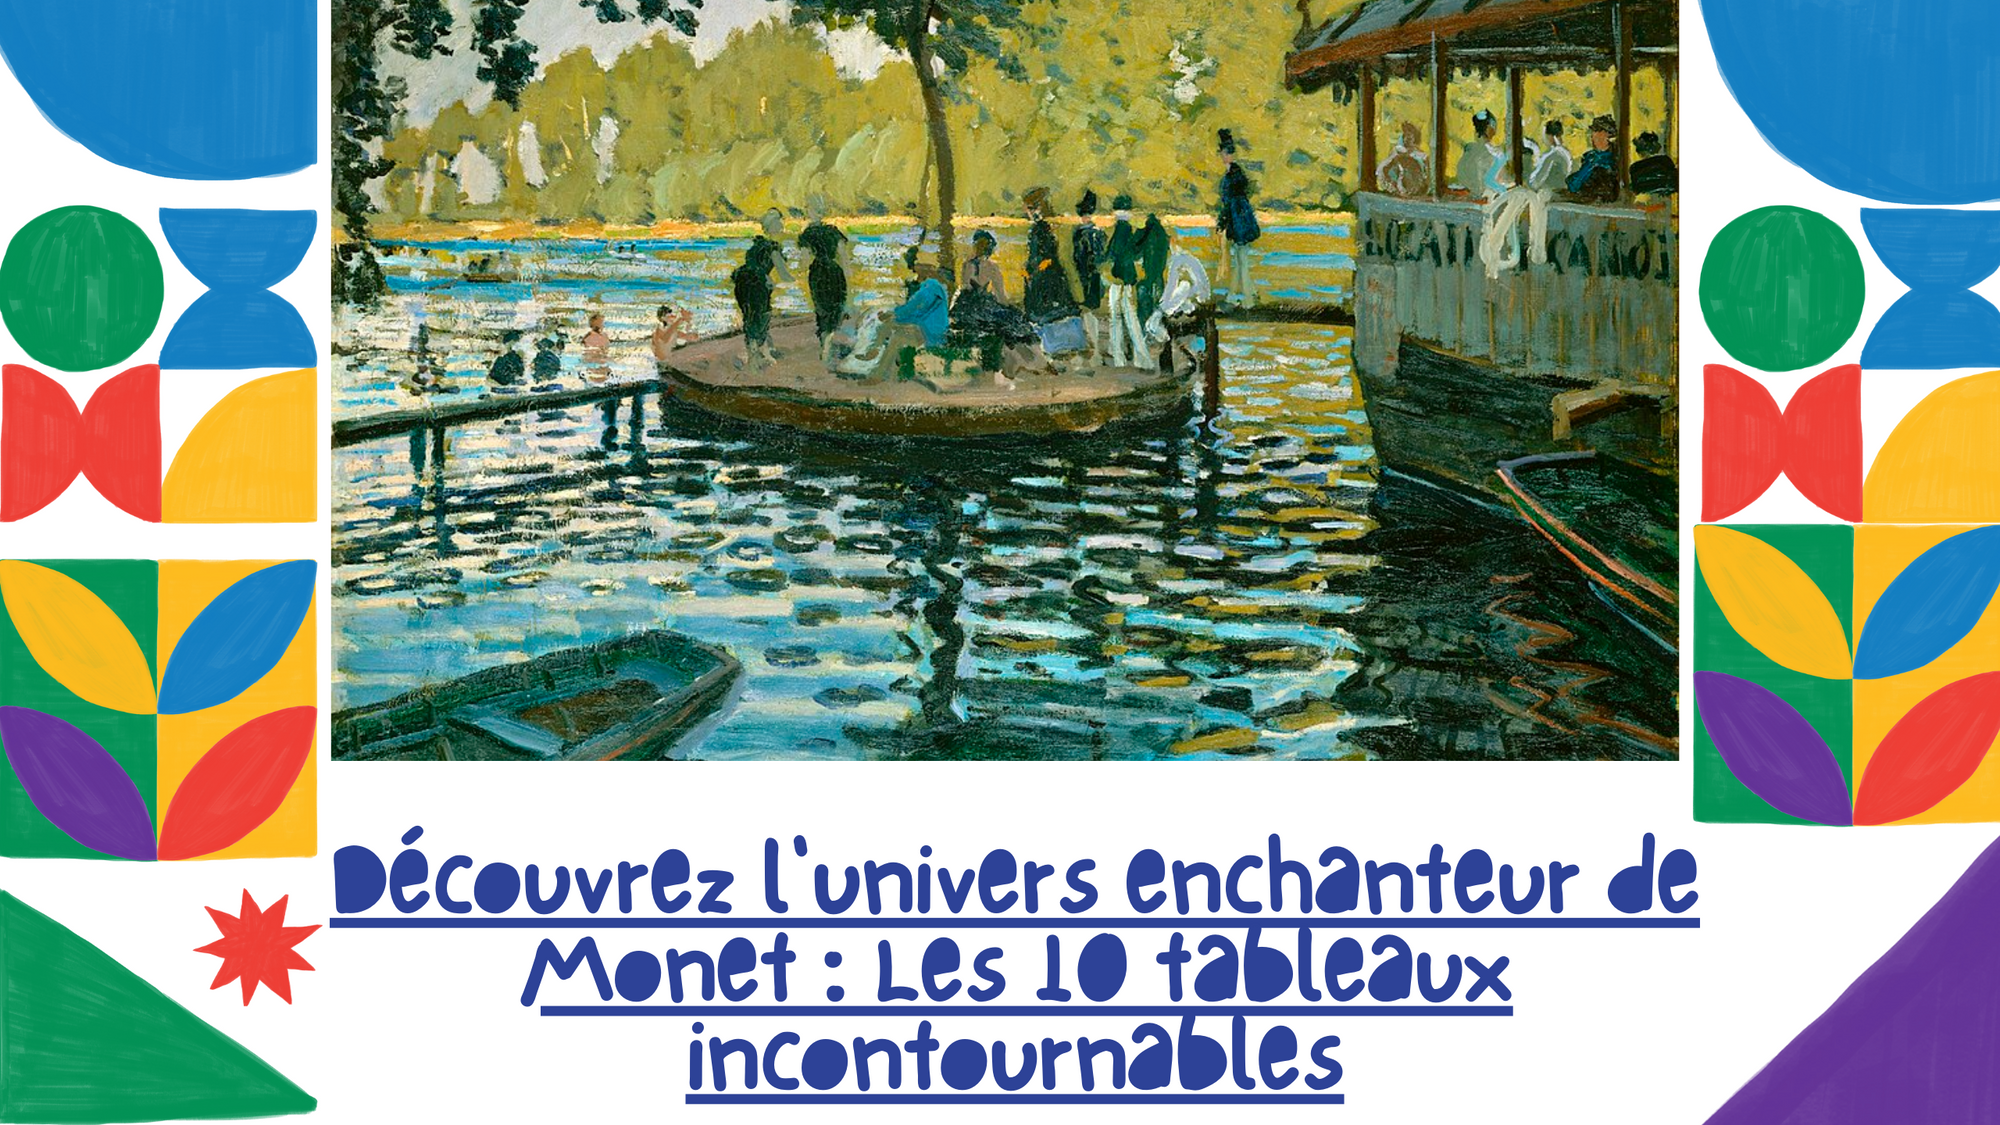 Découvrez l'univers enchanteur de Monet : Les 10 tableaux incontournables